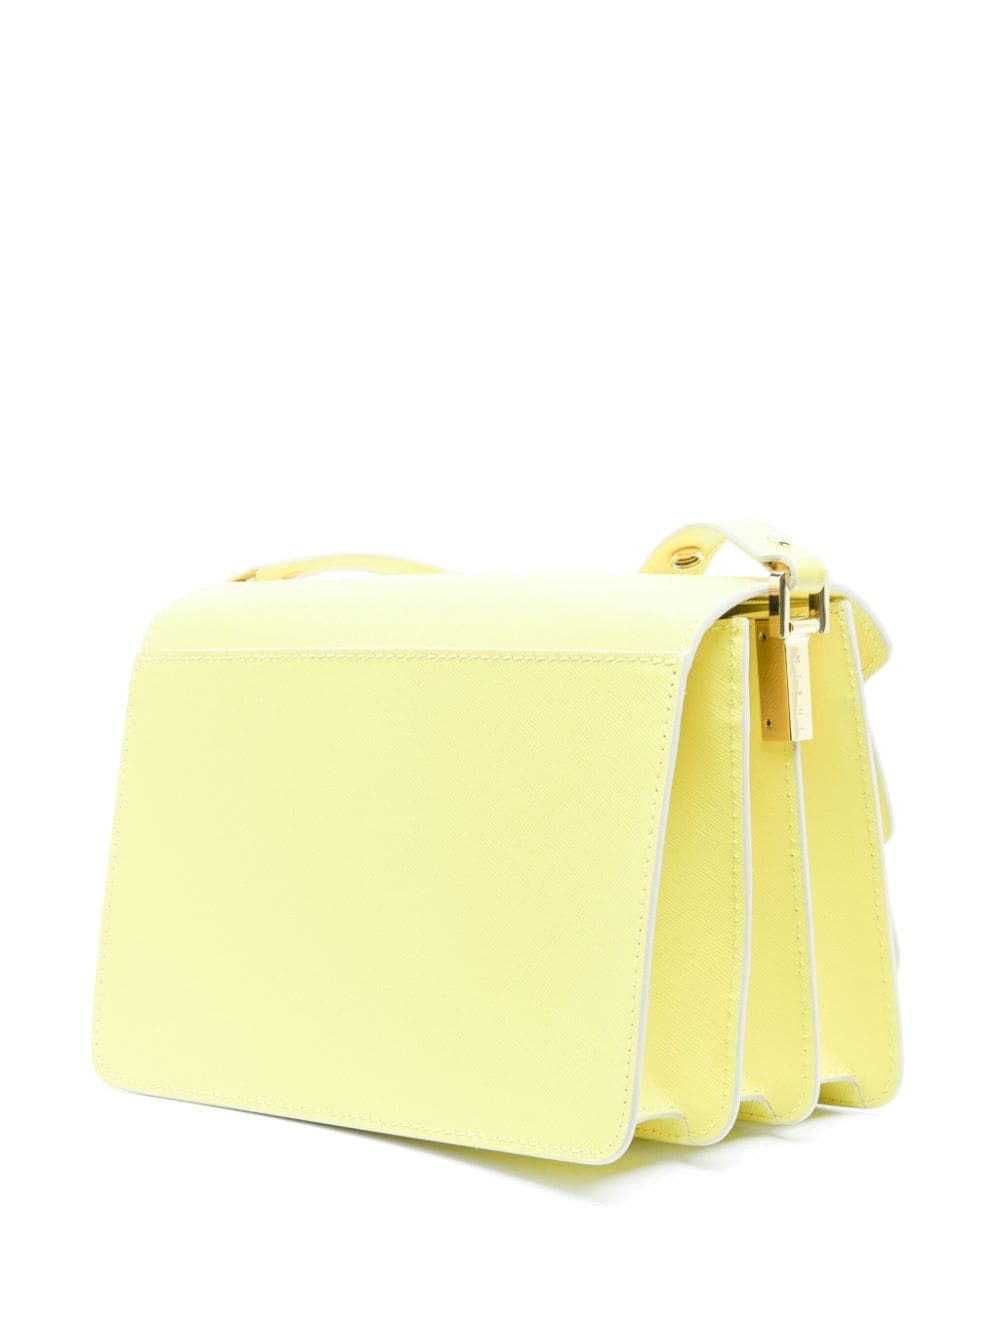 Light yellow bag